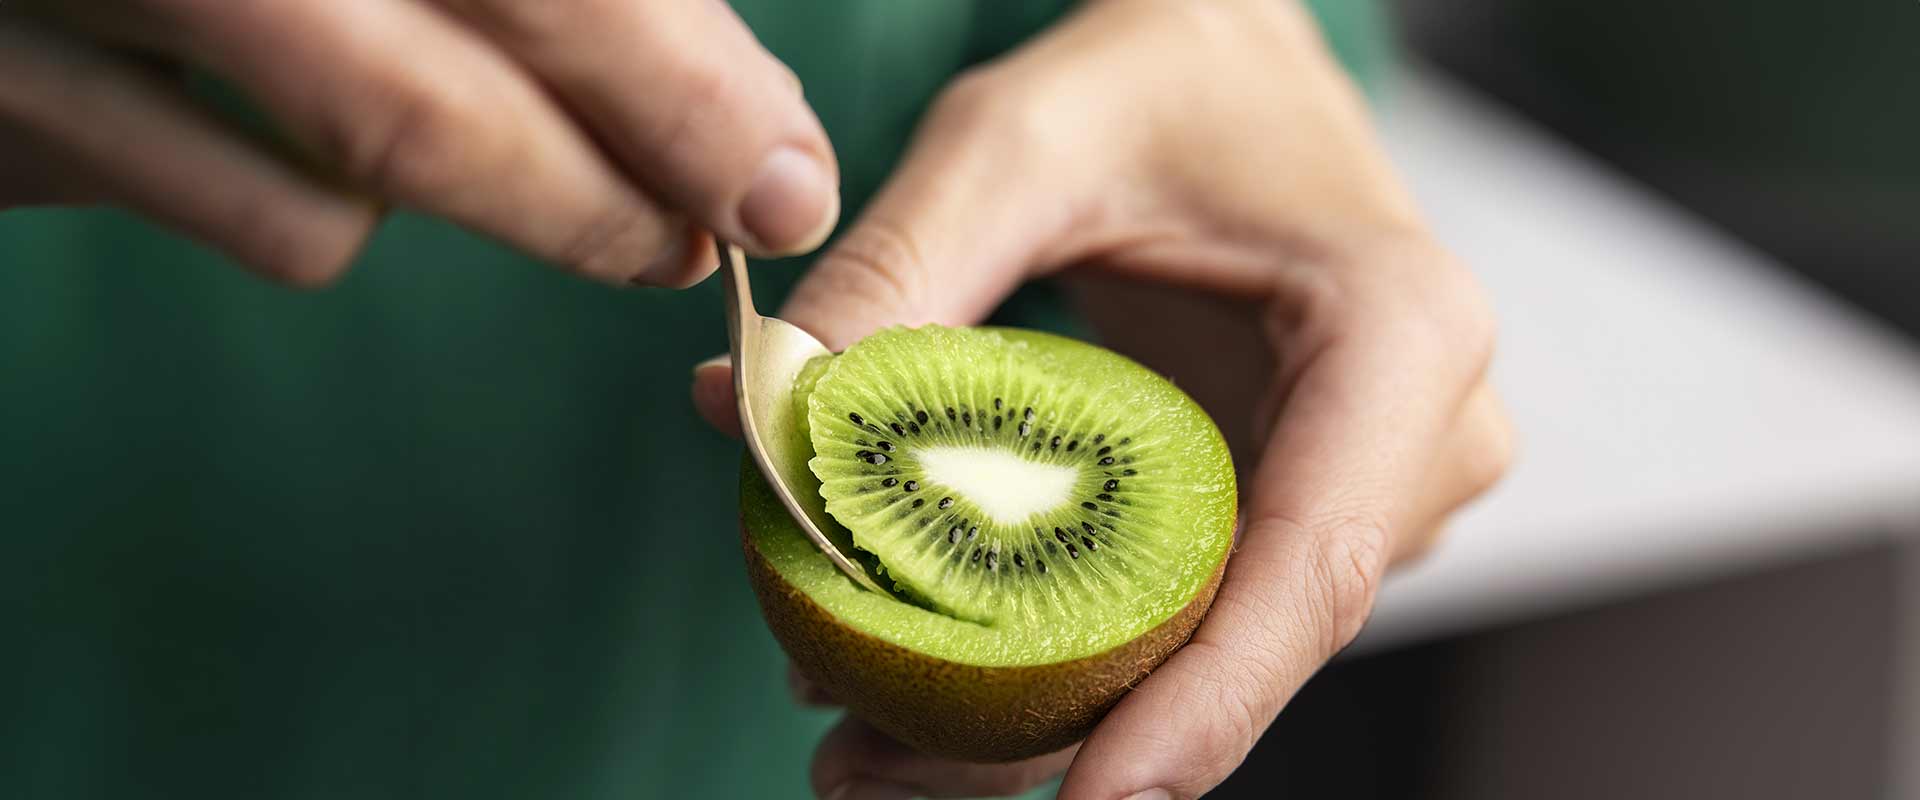 Le kiwi, une alternative naturelle aux laxatifs